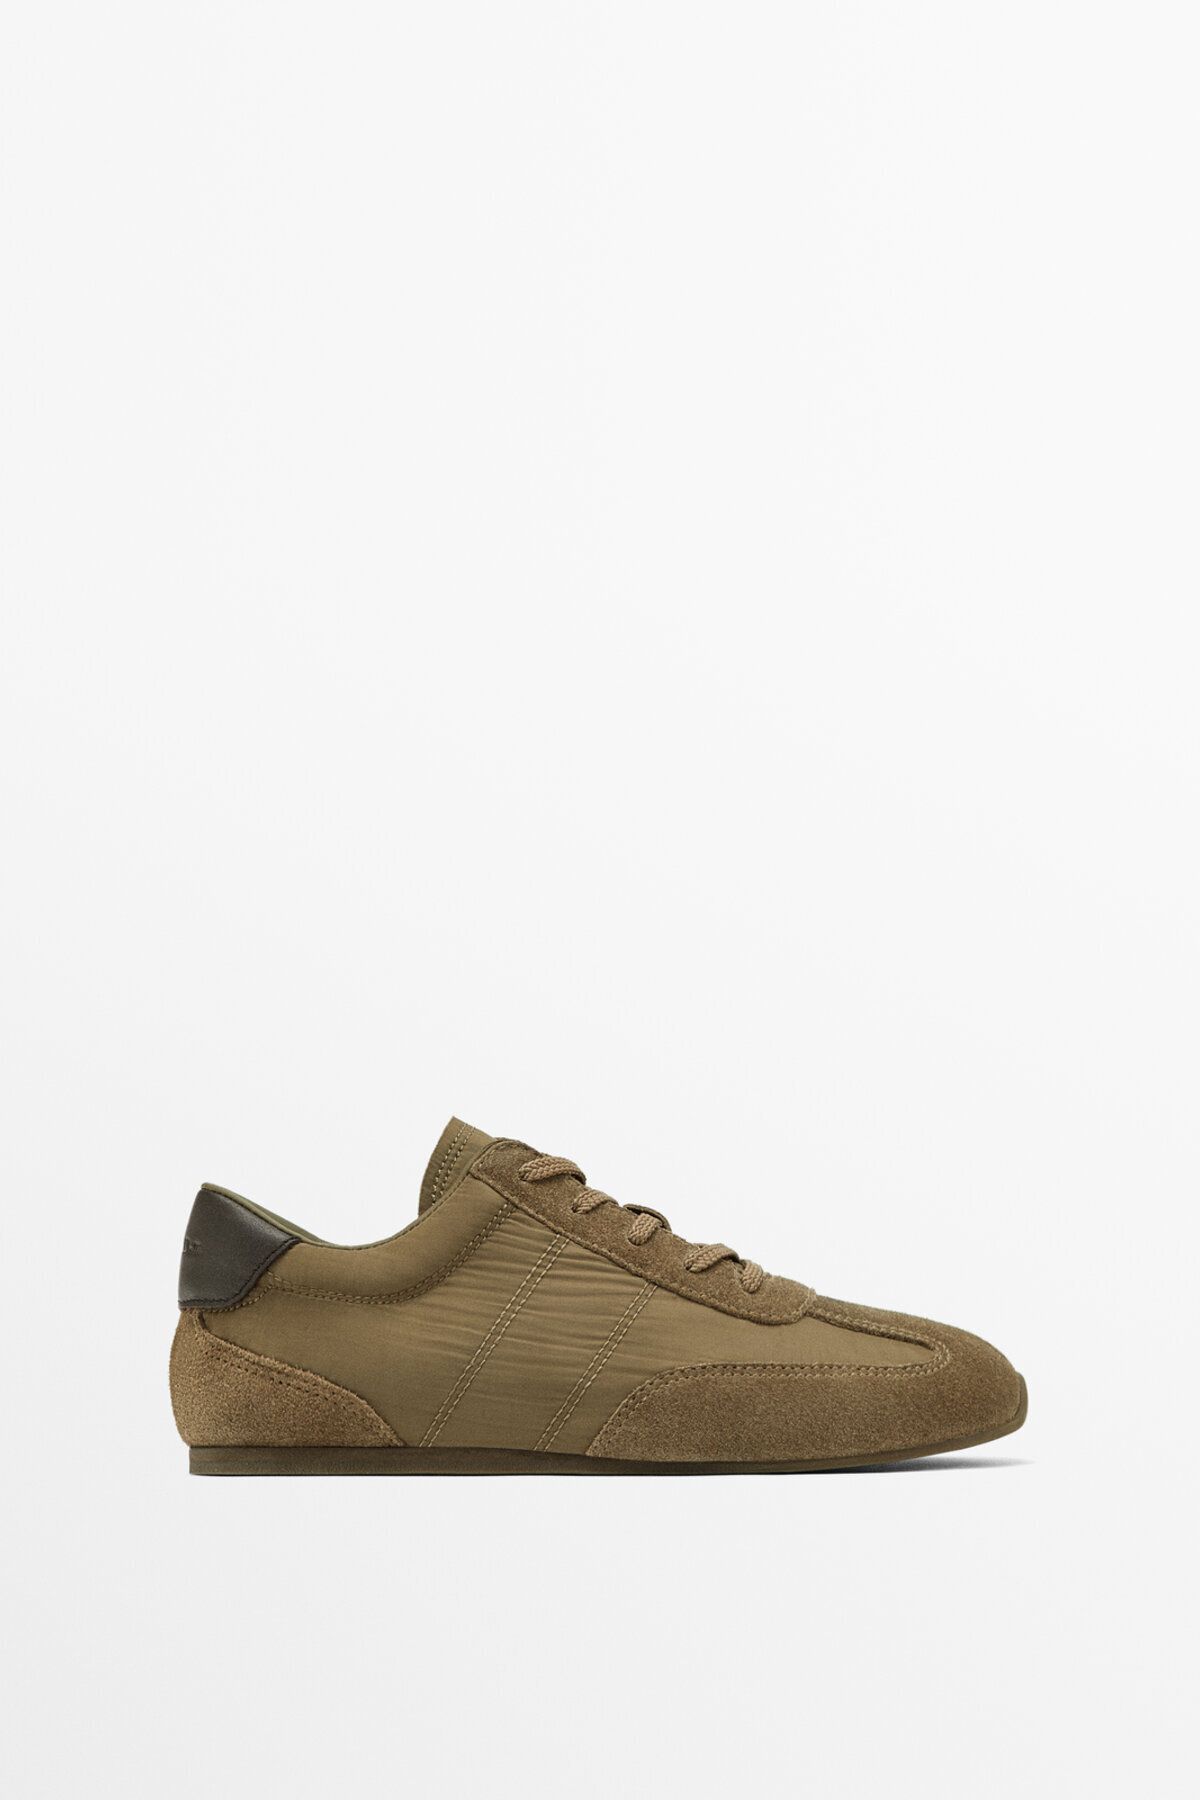 Massimo Dutti Kontrast kumaş spor ayakkabı